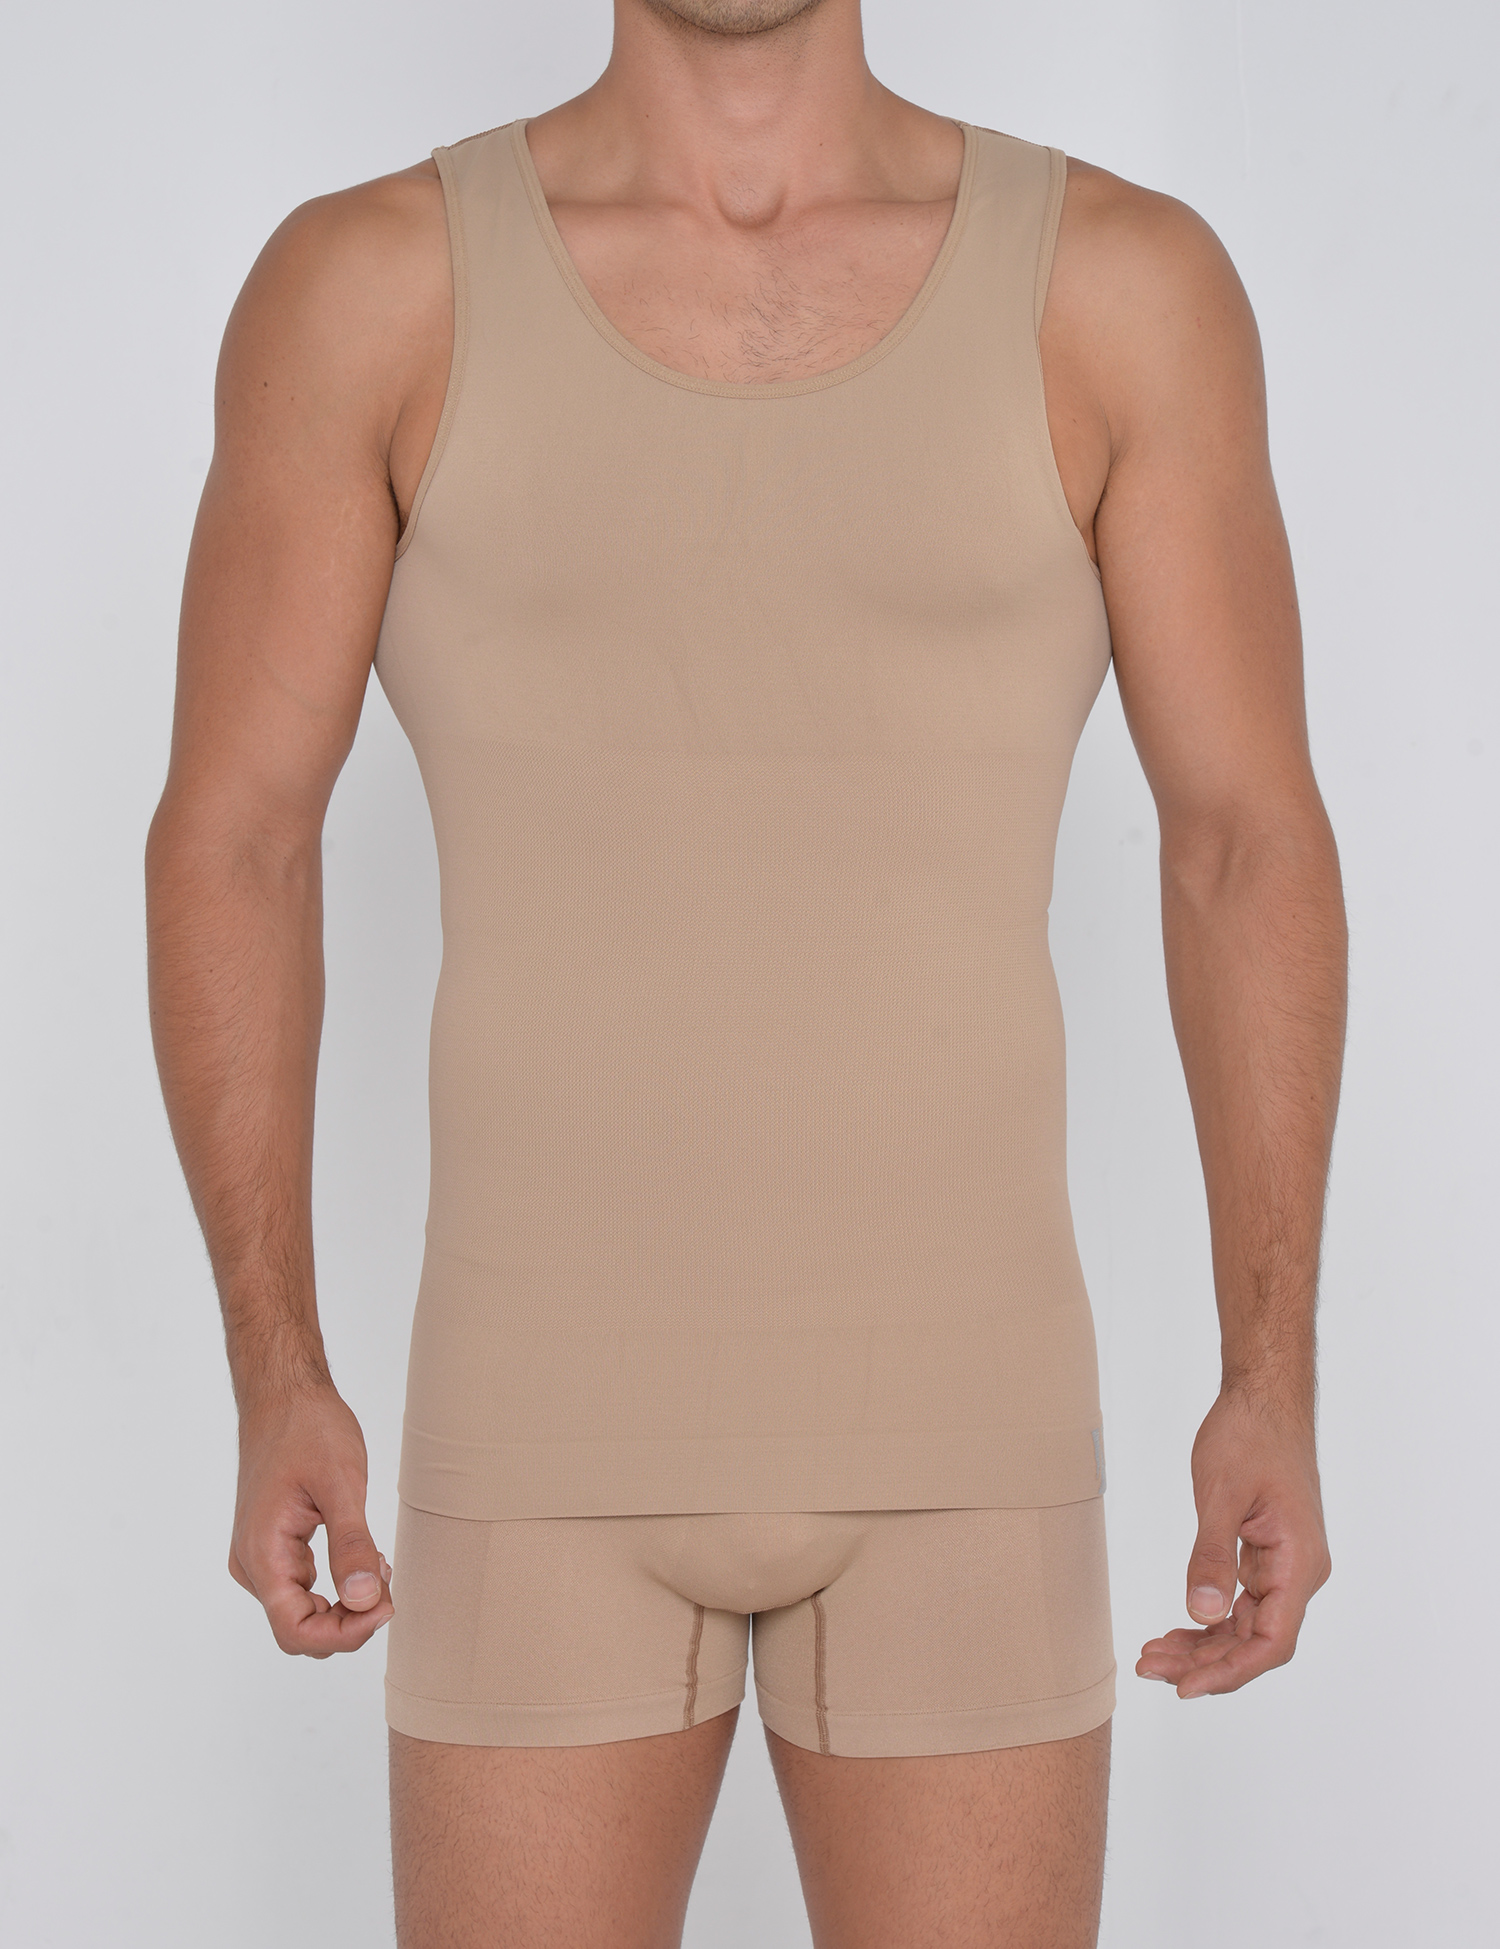 Men's Body Shaper Elastic Sculpting Shirt Compression Muscle Tank Tops  Shapewear